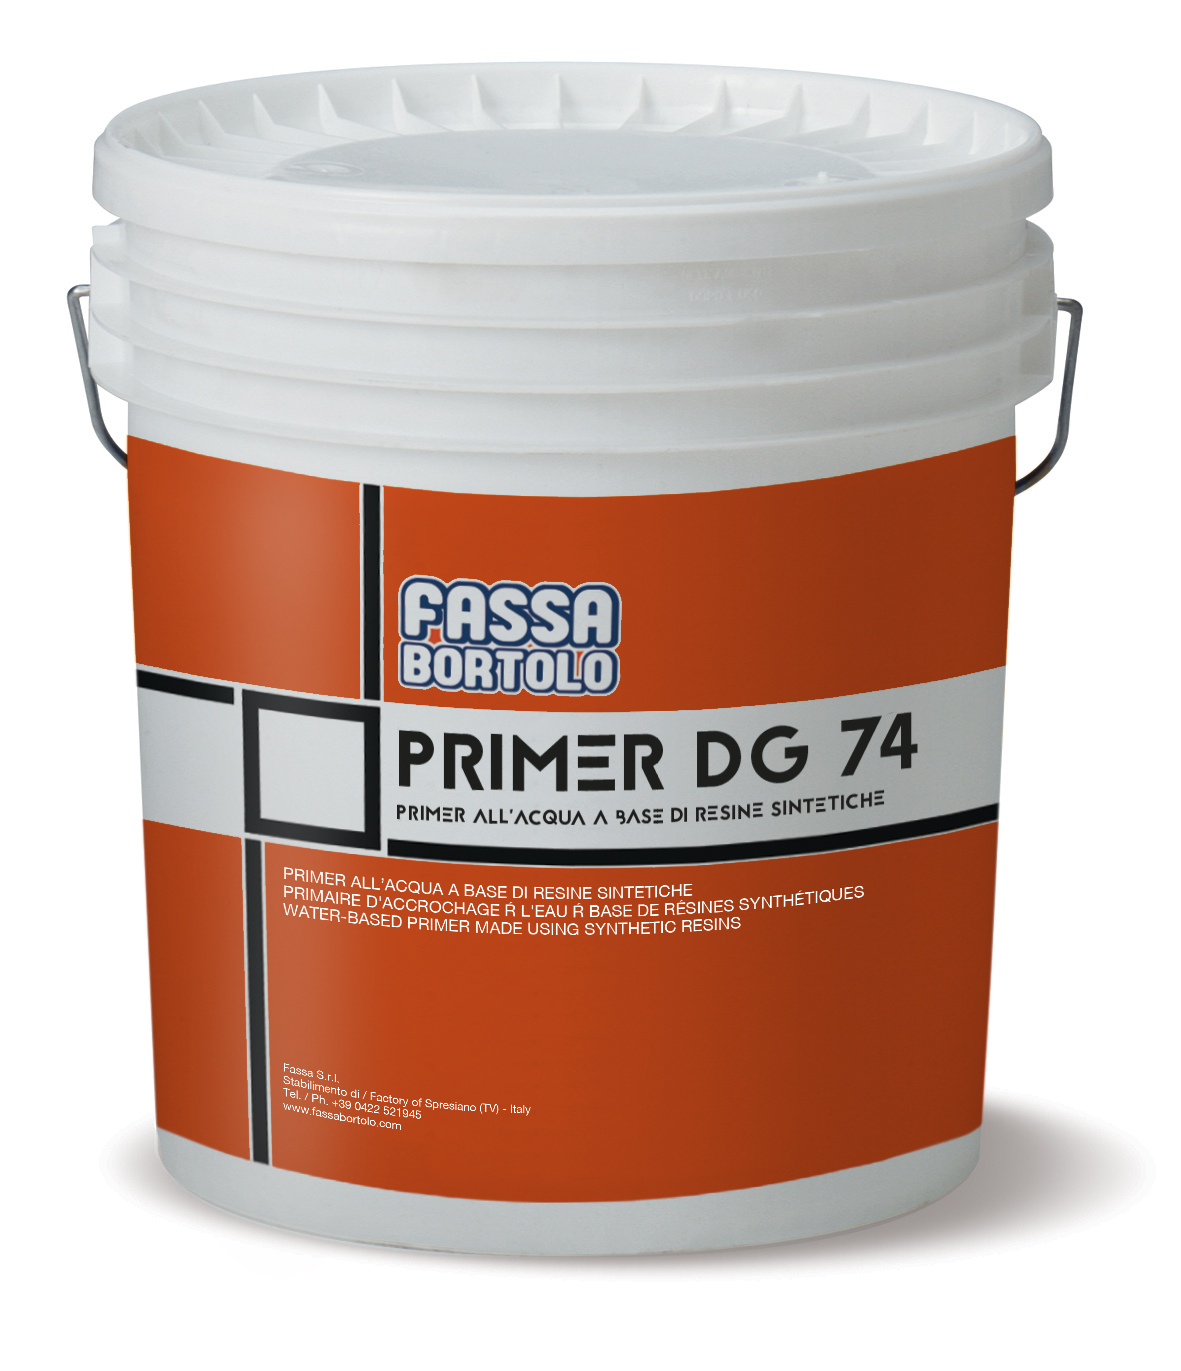 PRIMER DG 74: Impregnación al agua a base de resinas sintéticas